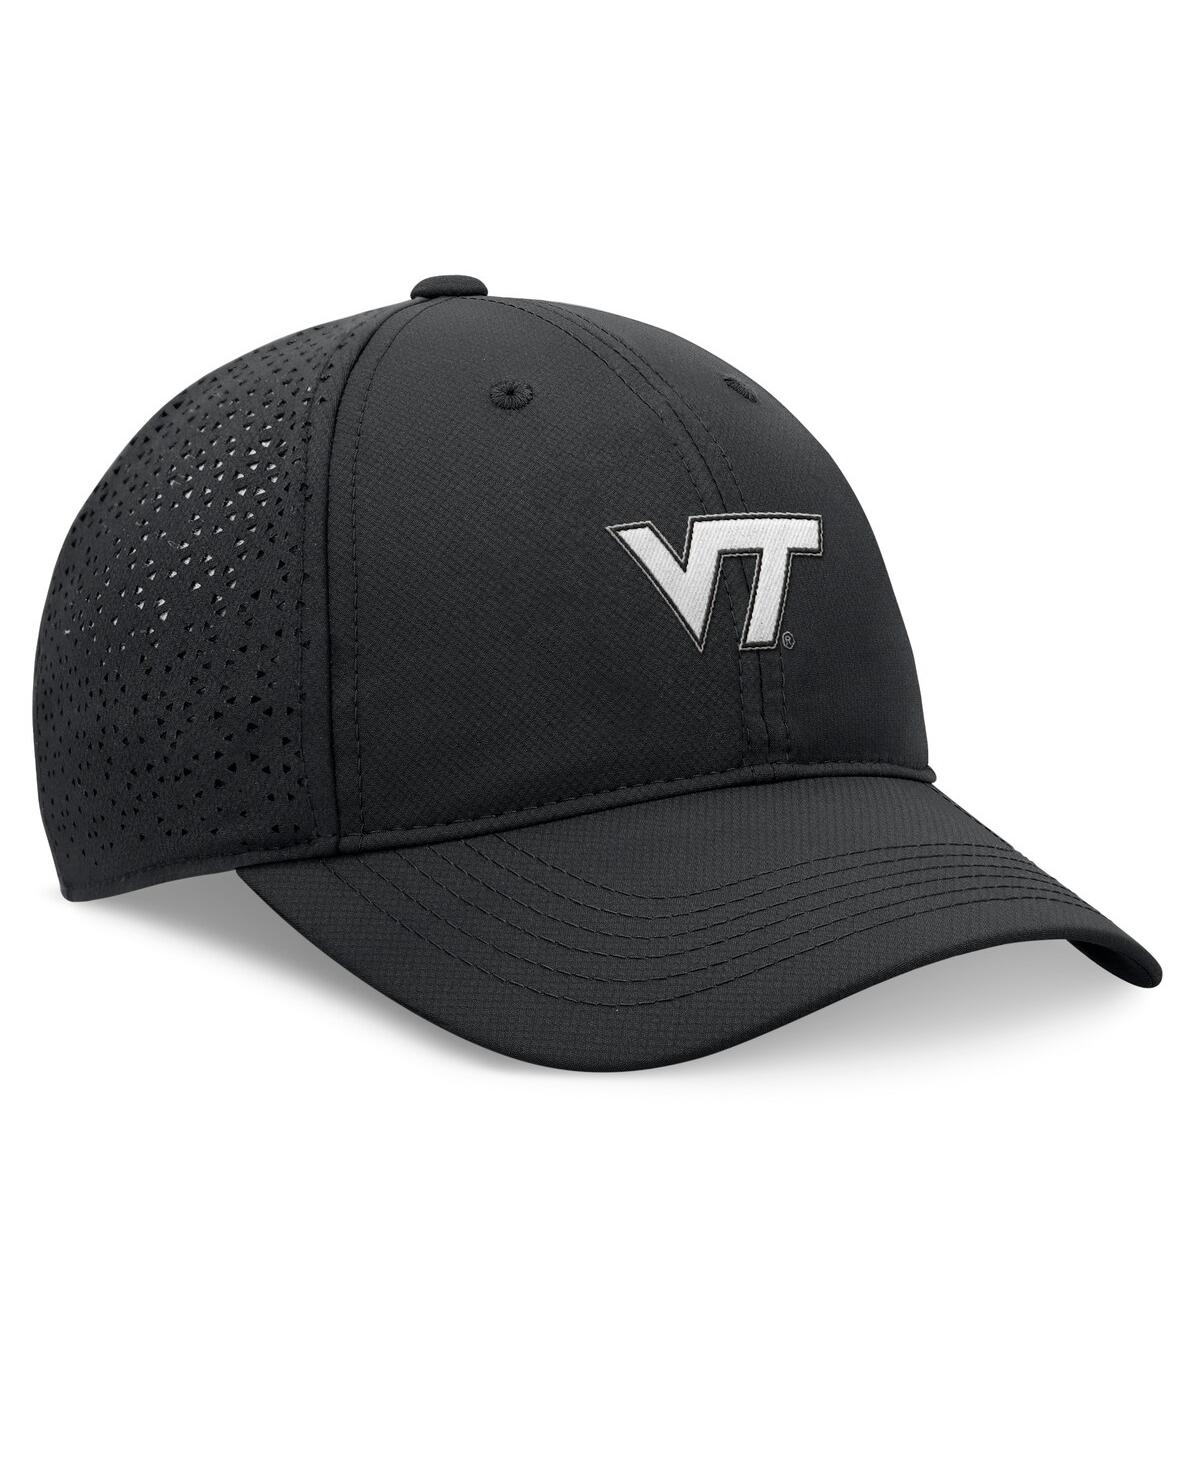 Shop Top Of The World Men's Black Virginia Tech Hokies Liquesce Trucker Adjustable Hat